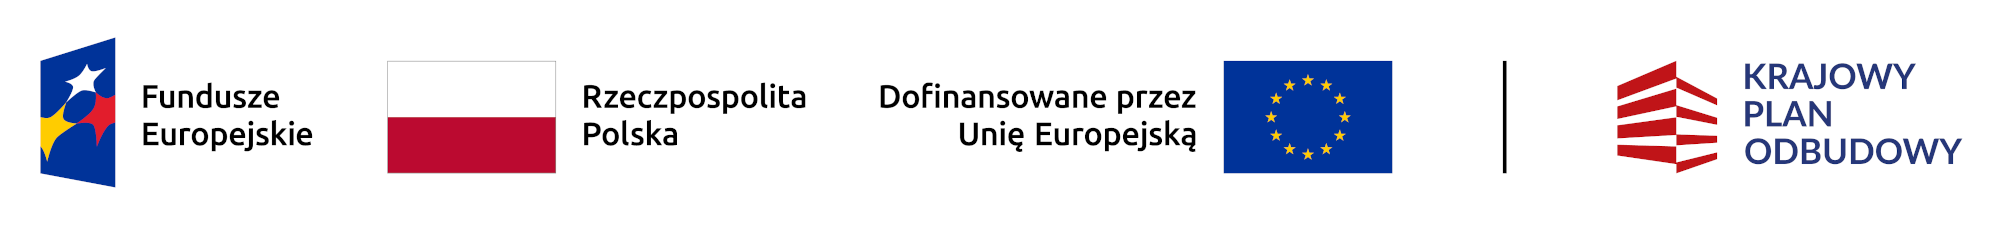 Banner informujący o dofinansowaniu z Funduszy Europejskich oraz programu Krajowy Plan Odbudowy.